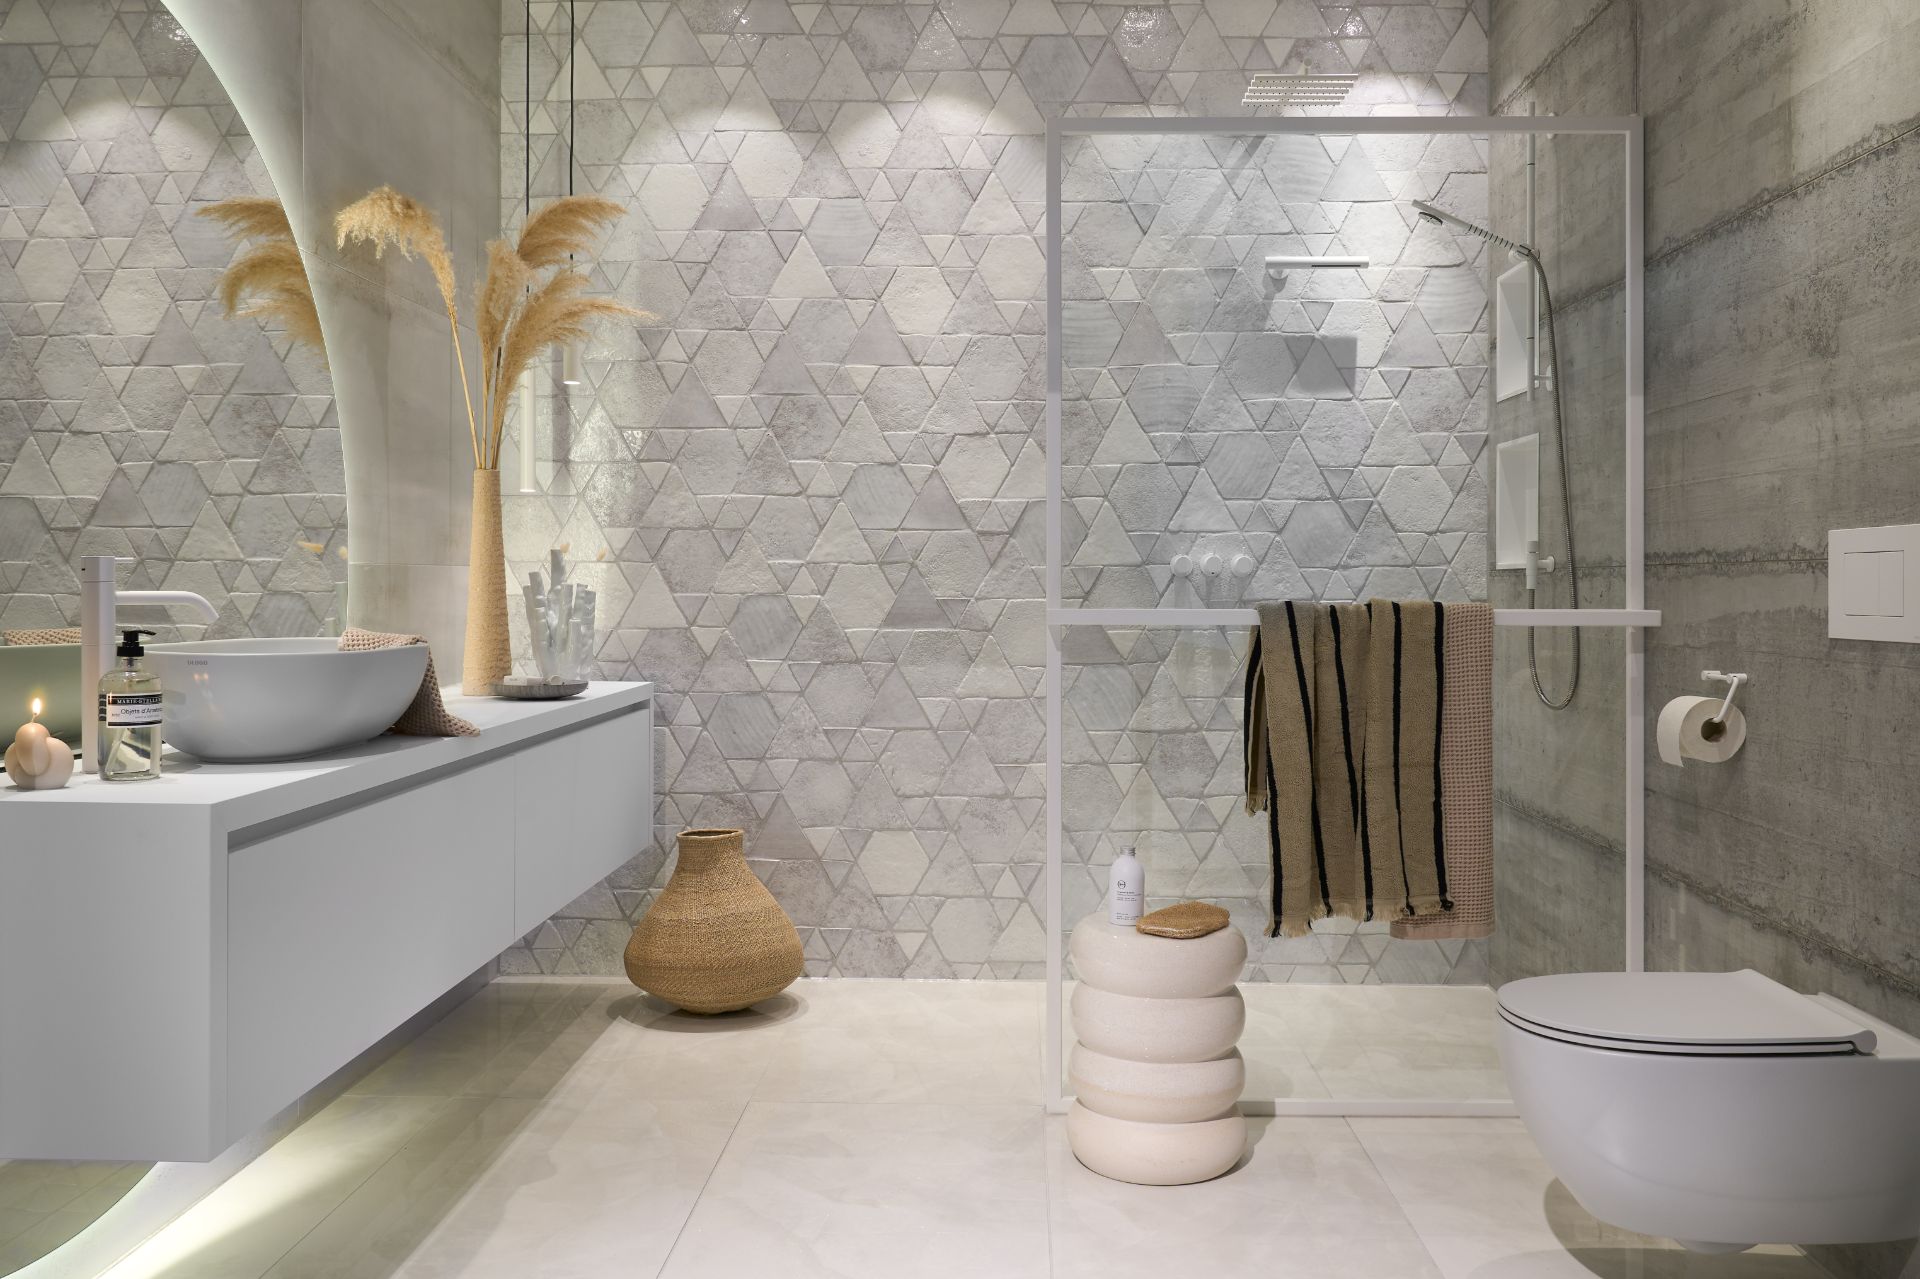 Foto: ultieme witte badkamer met prachtige tegels   eerste kamer badkamers   002